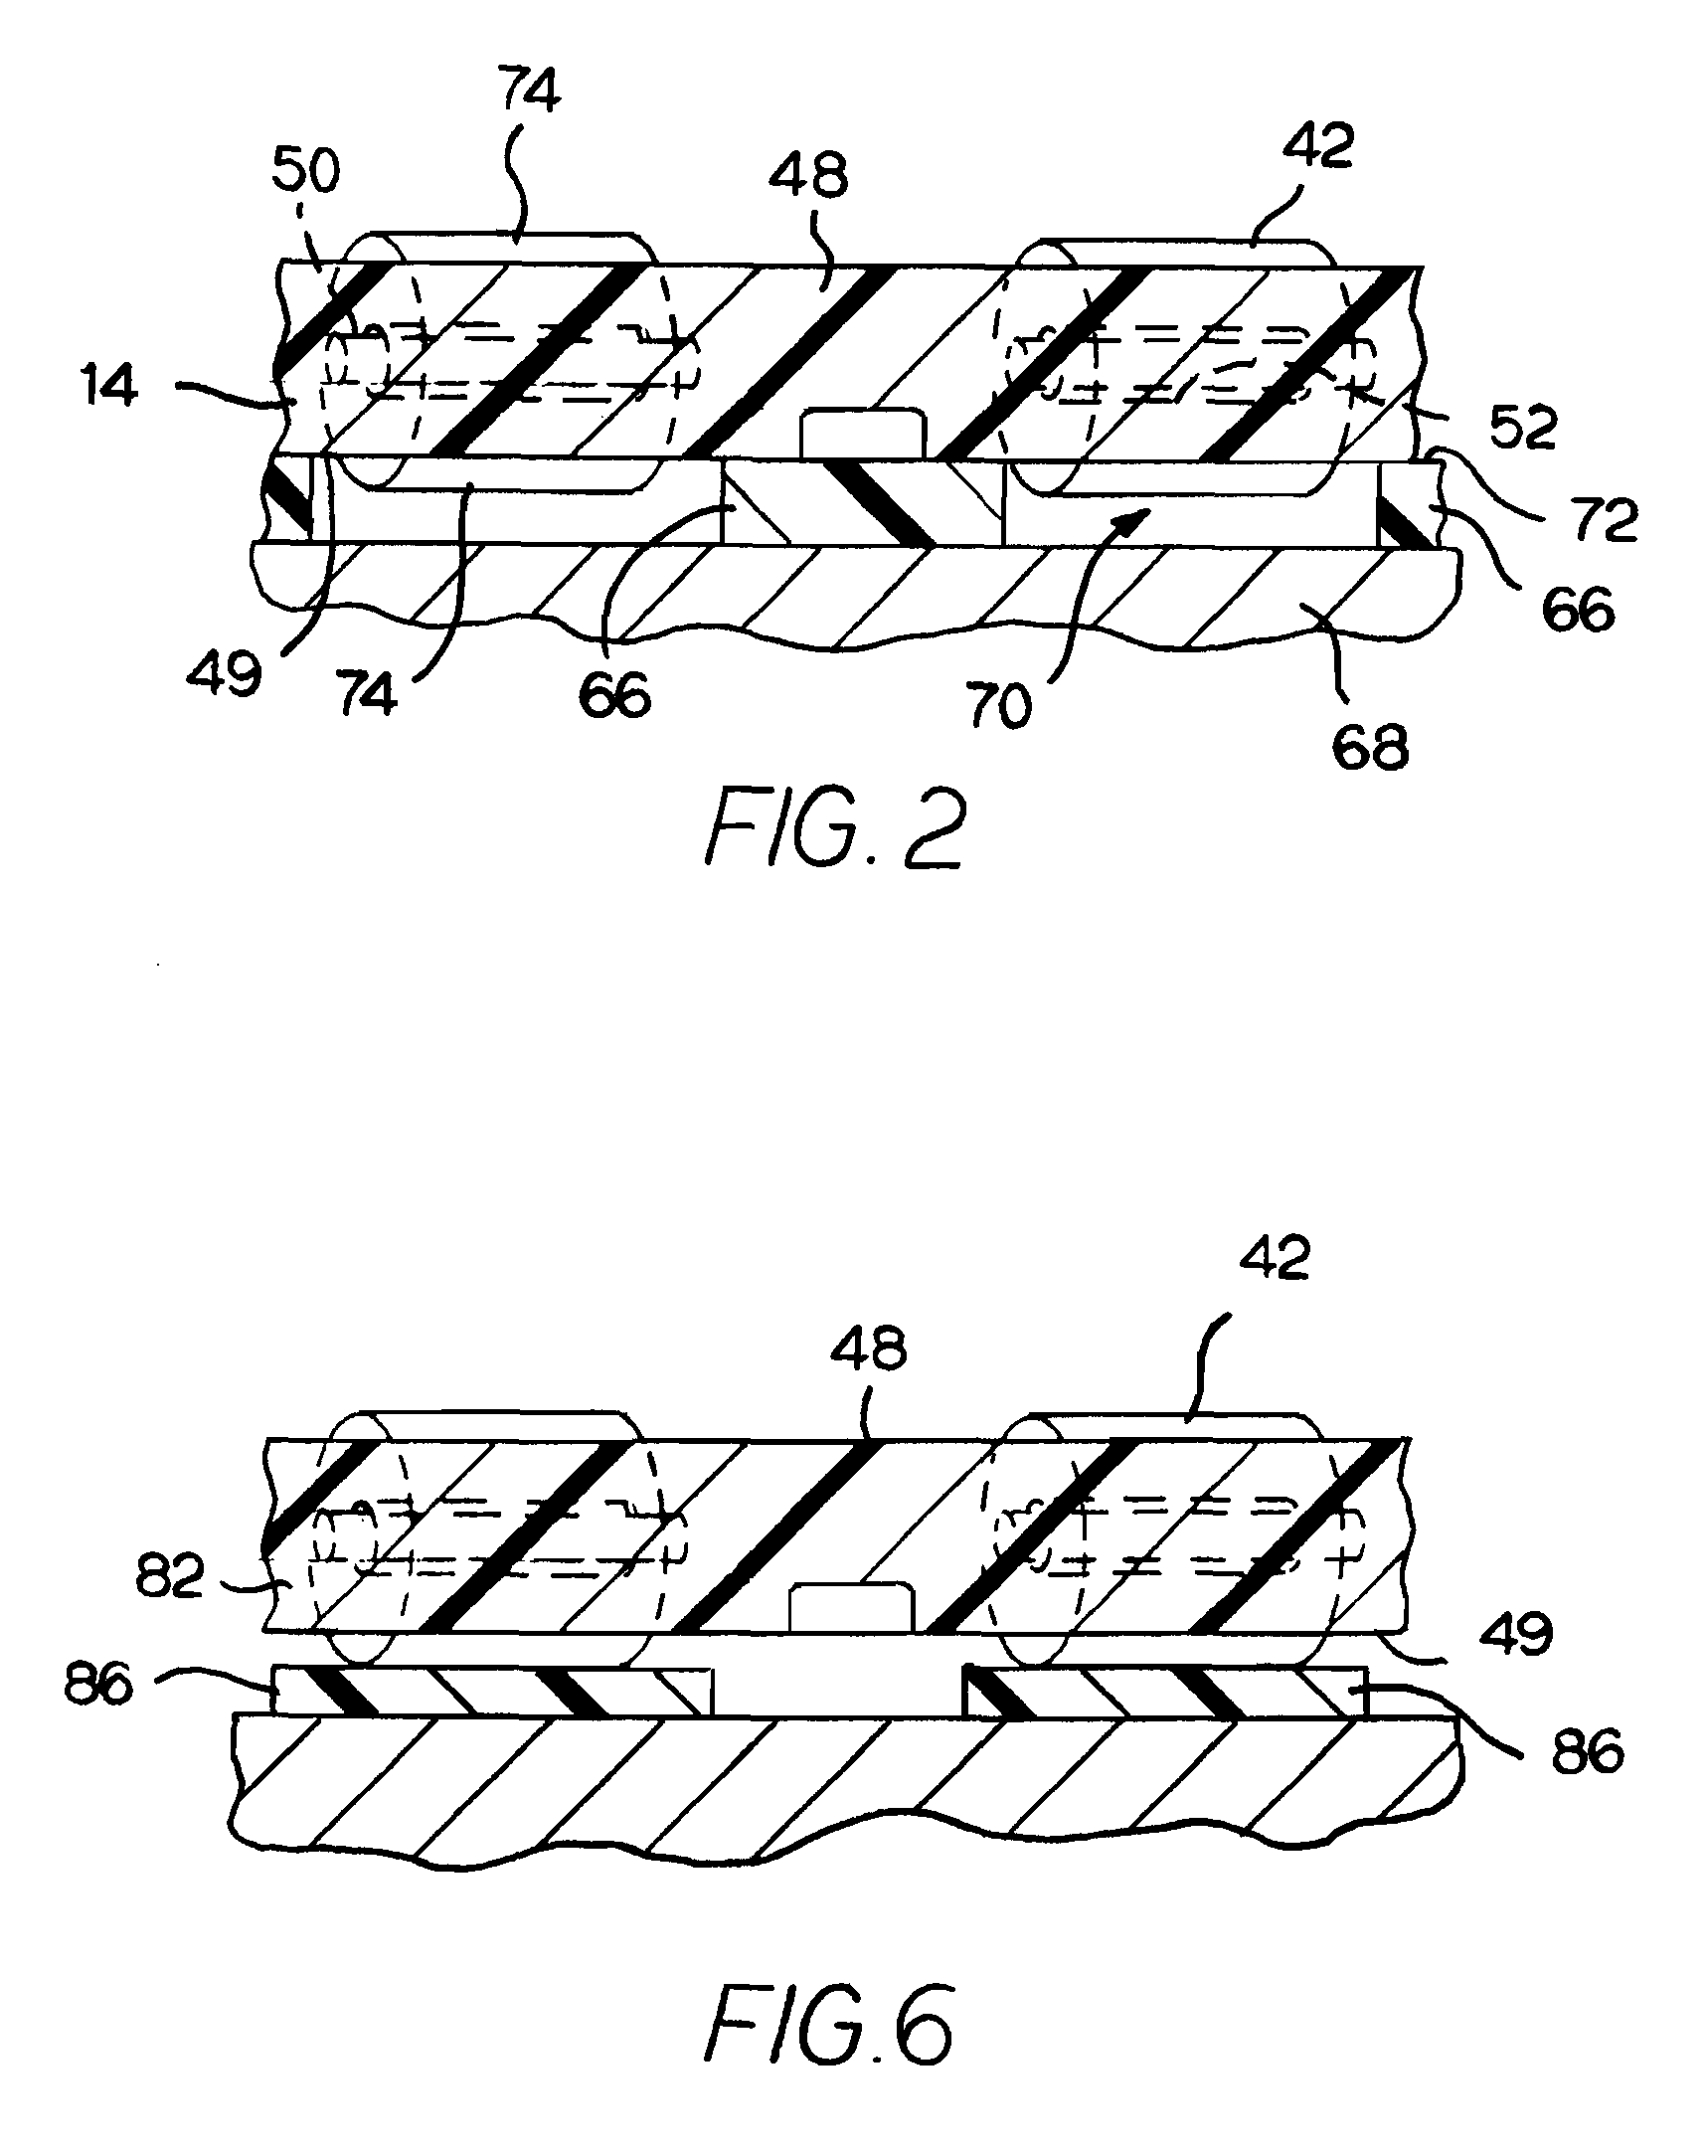 Pallet-forming roller-belt conveyor